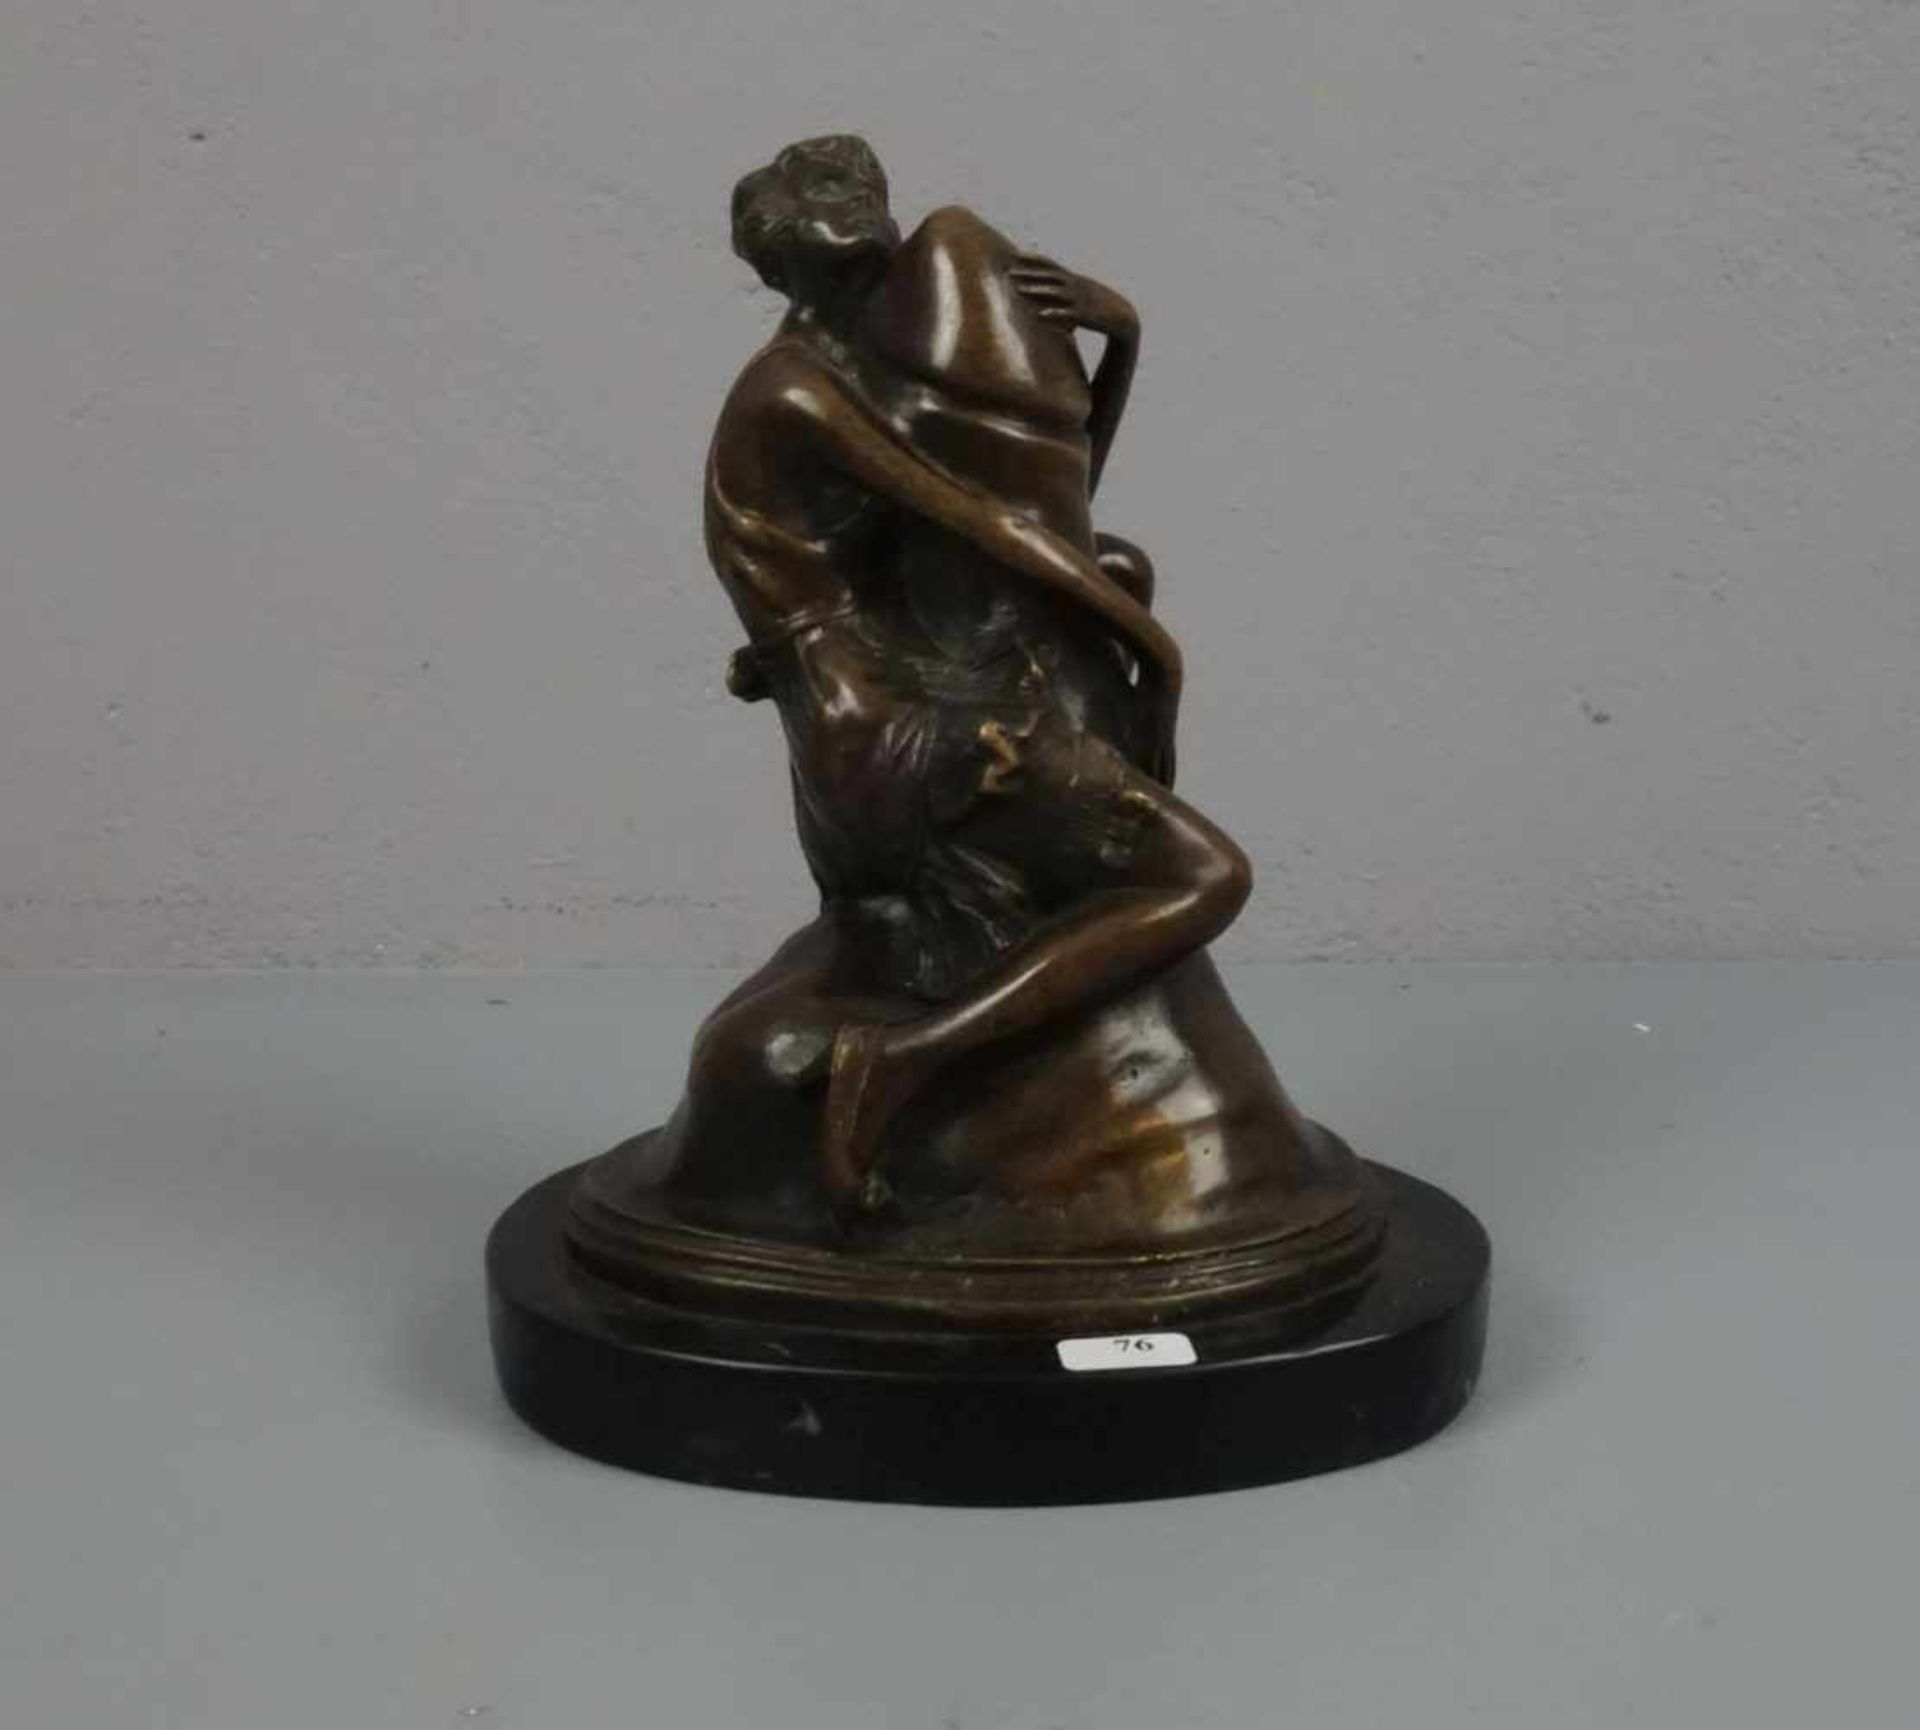 ZACH, BRUNO (1891-1945), erotische Skulptur / erotic sculpture: "Junge Frau, einen Phallus